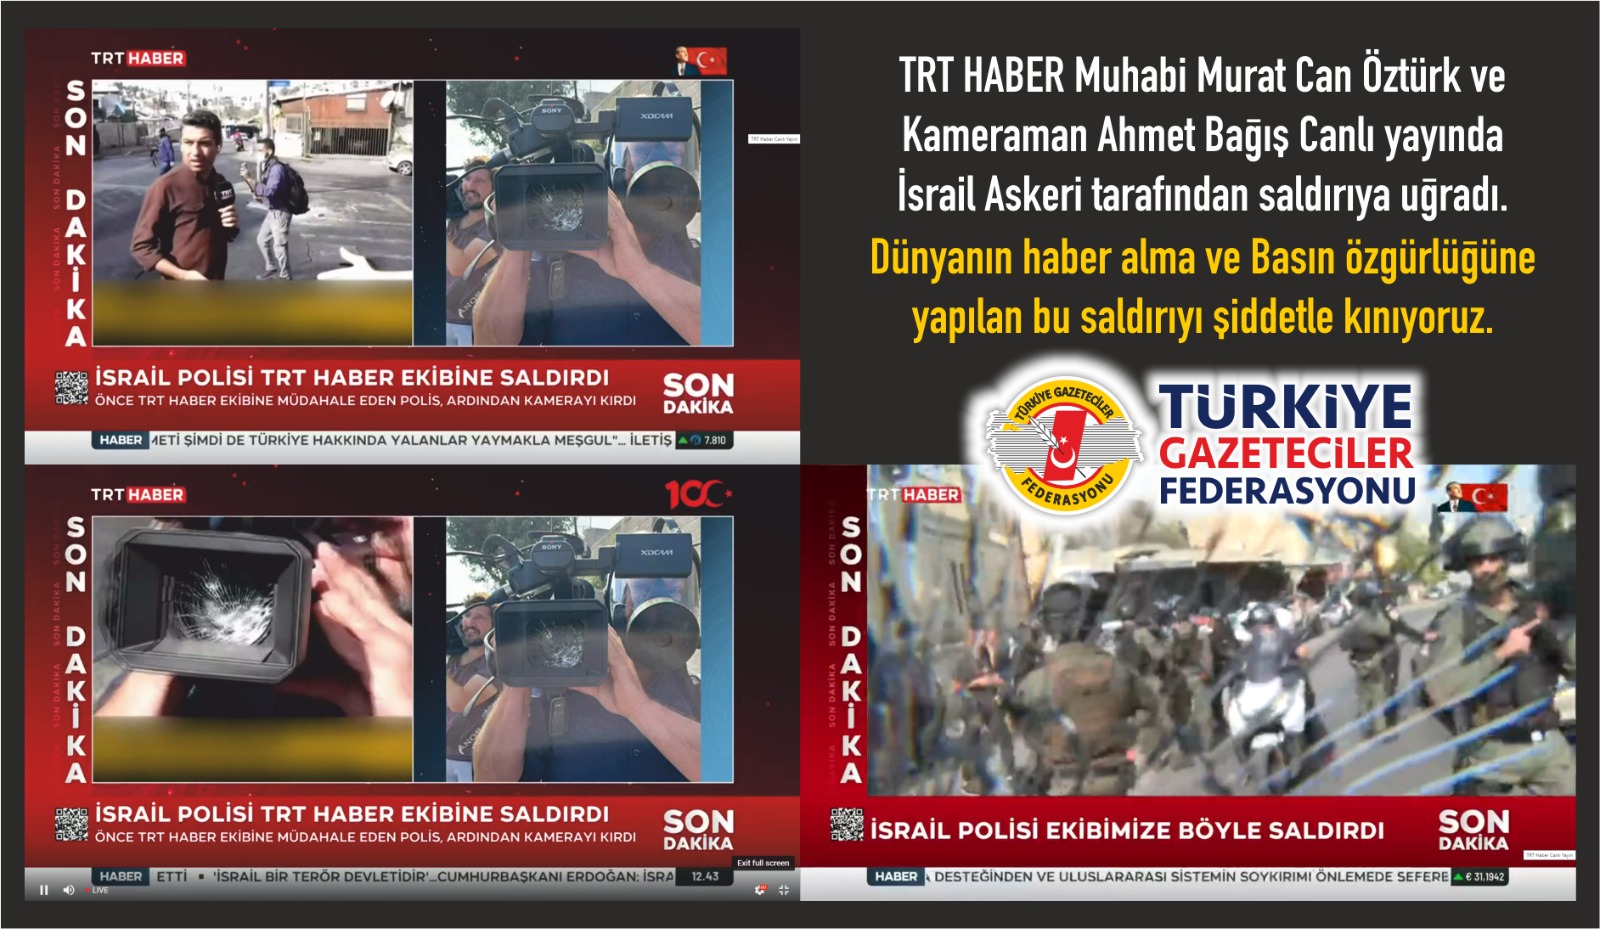 TGF; Doğu Kudüs’te TRT Haber’e canlı yayında yapılan saldırıyı şiddetle kınıyoruz